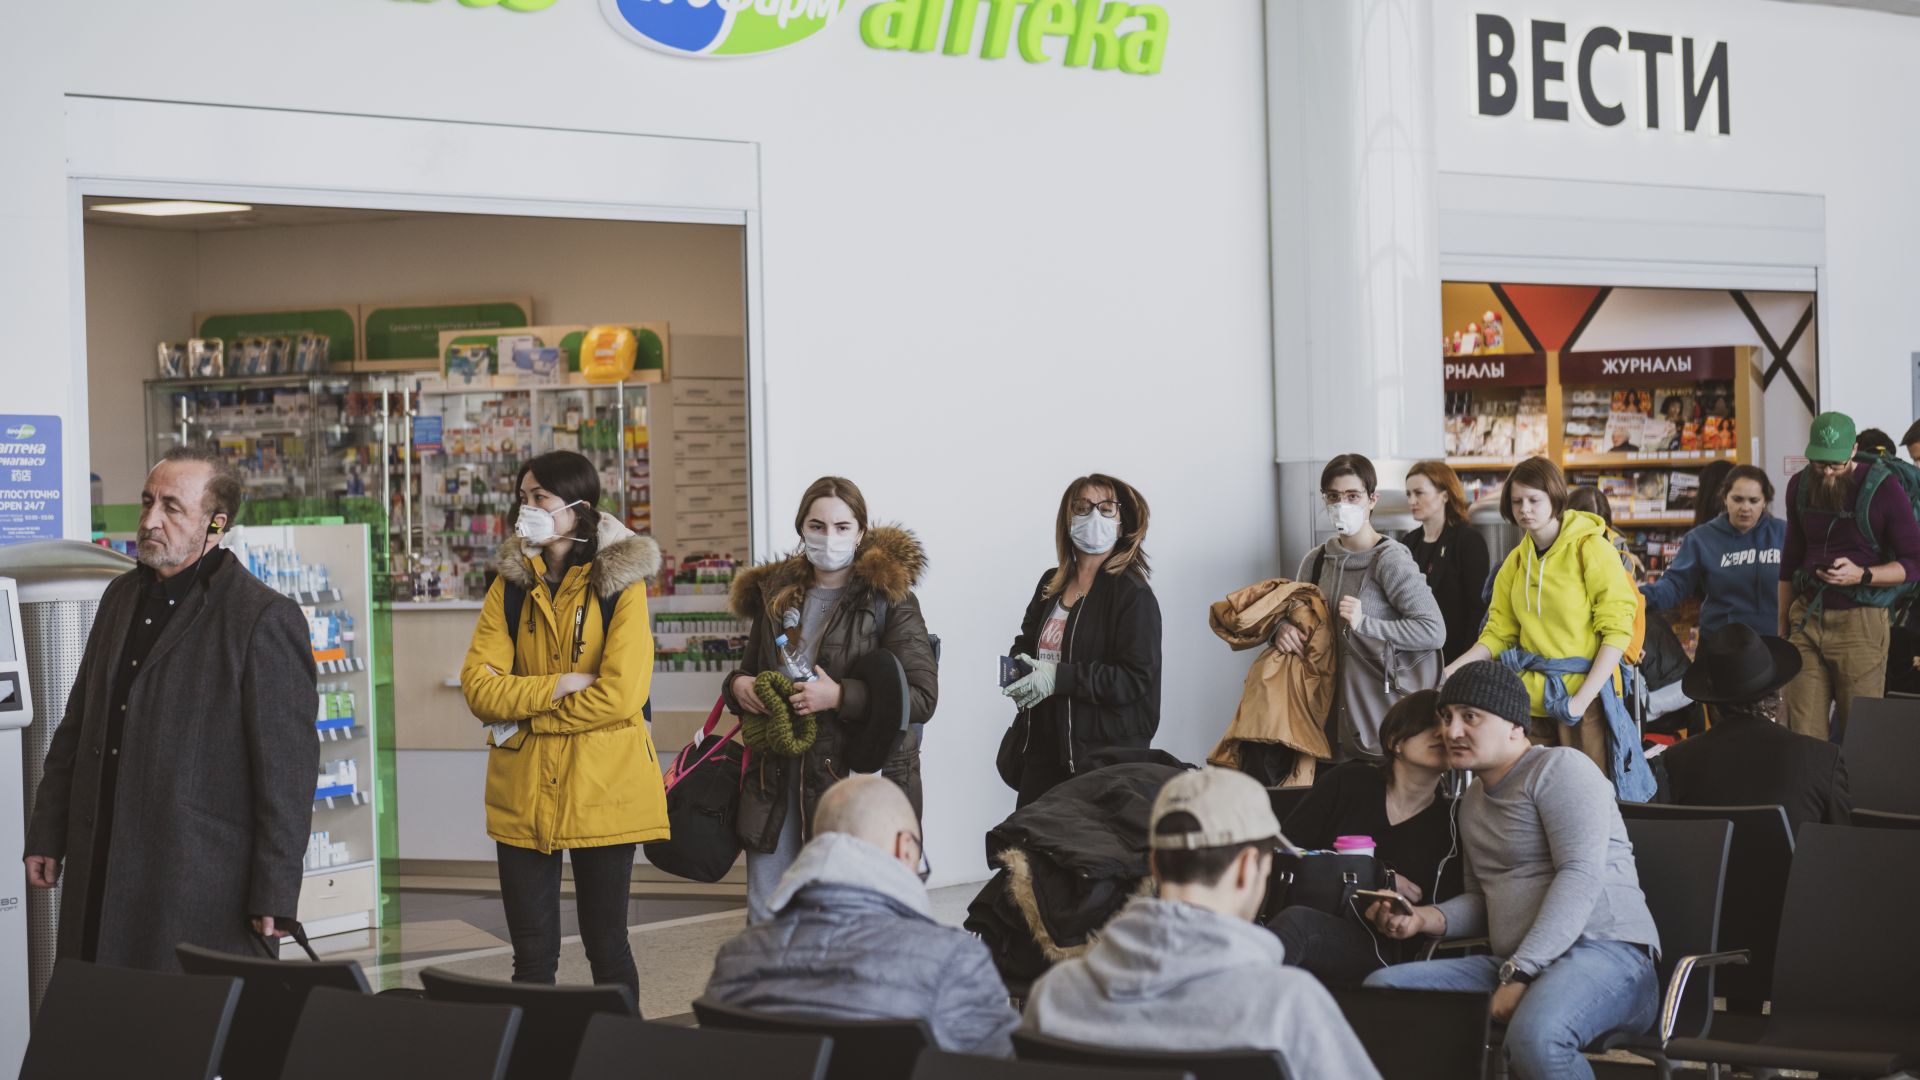 Кметът Собянин: Половината от населението на Москва изкара корнавируса